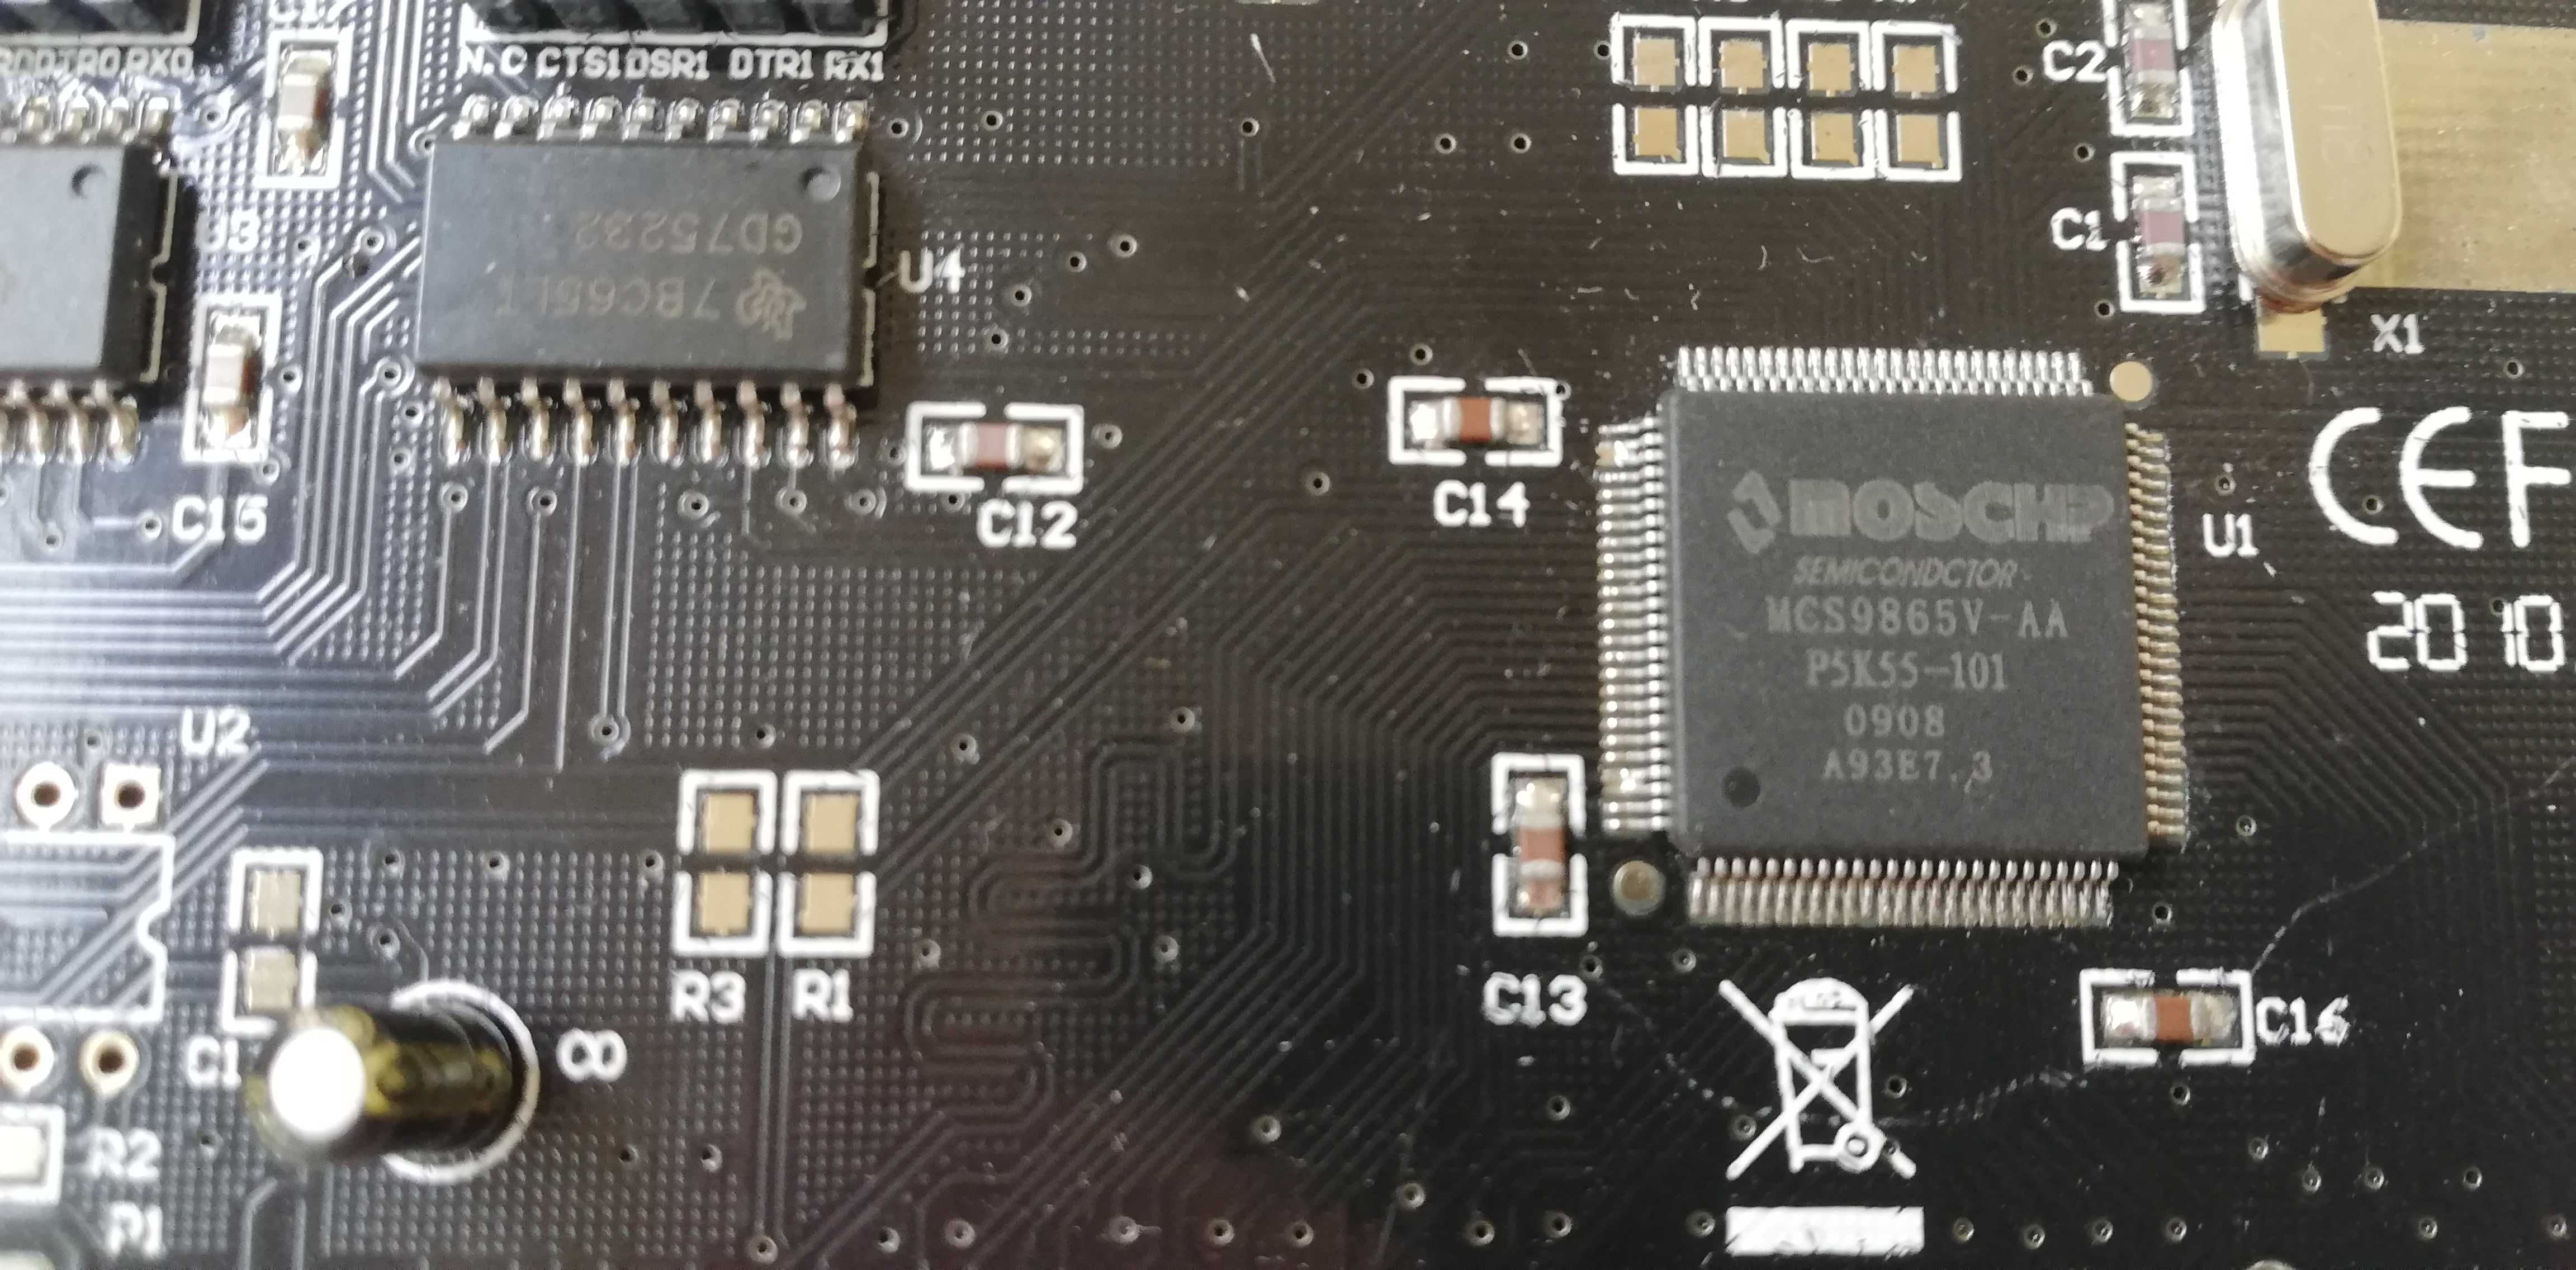 Контроллер COM LPT St-Lab PCI-2 чип MOSCHIP MCS9865V-AA новый